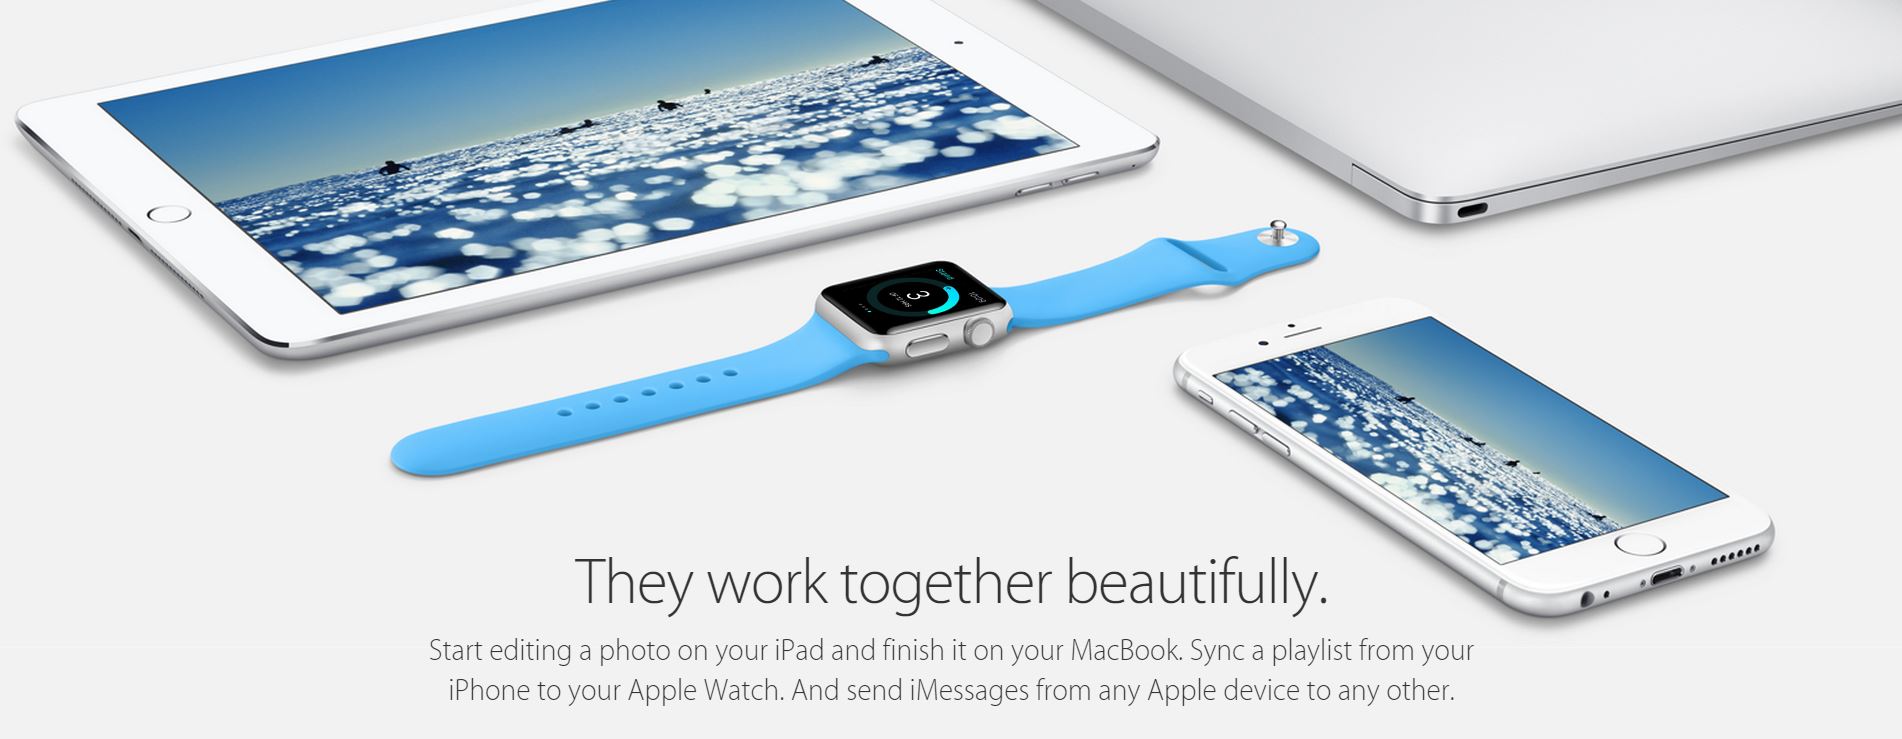 Apple Watch podłączony do iPhone'a Mac